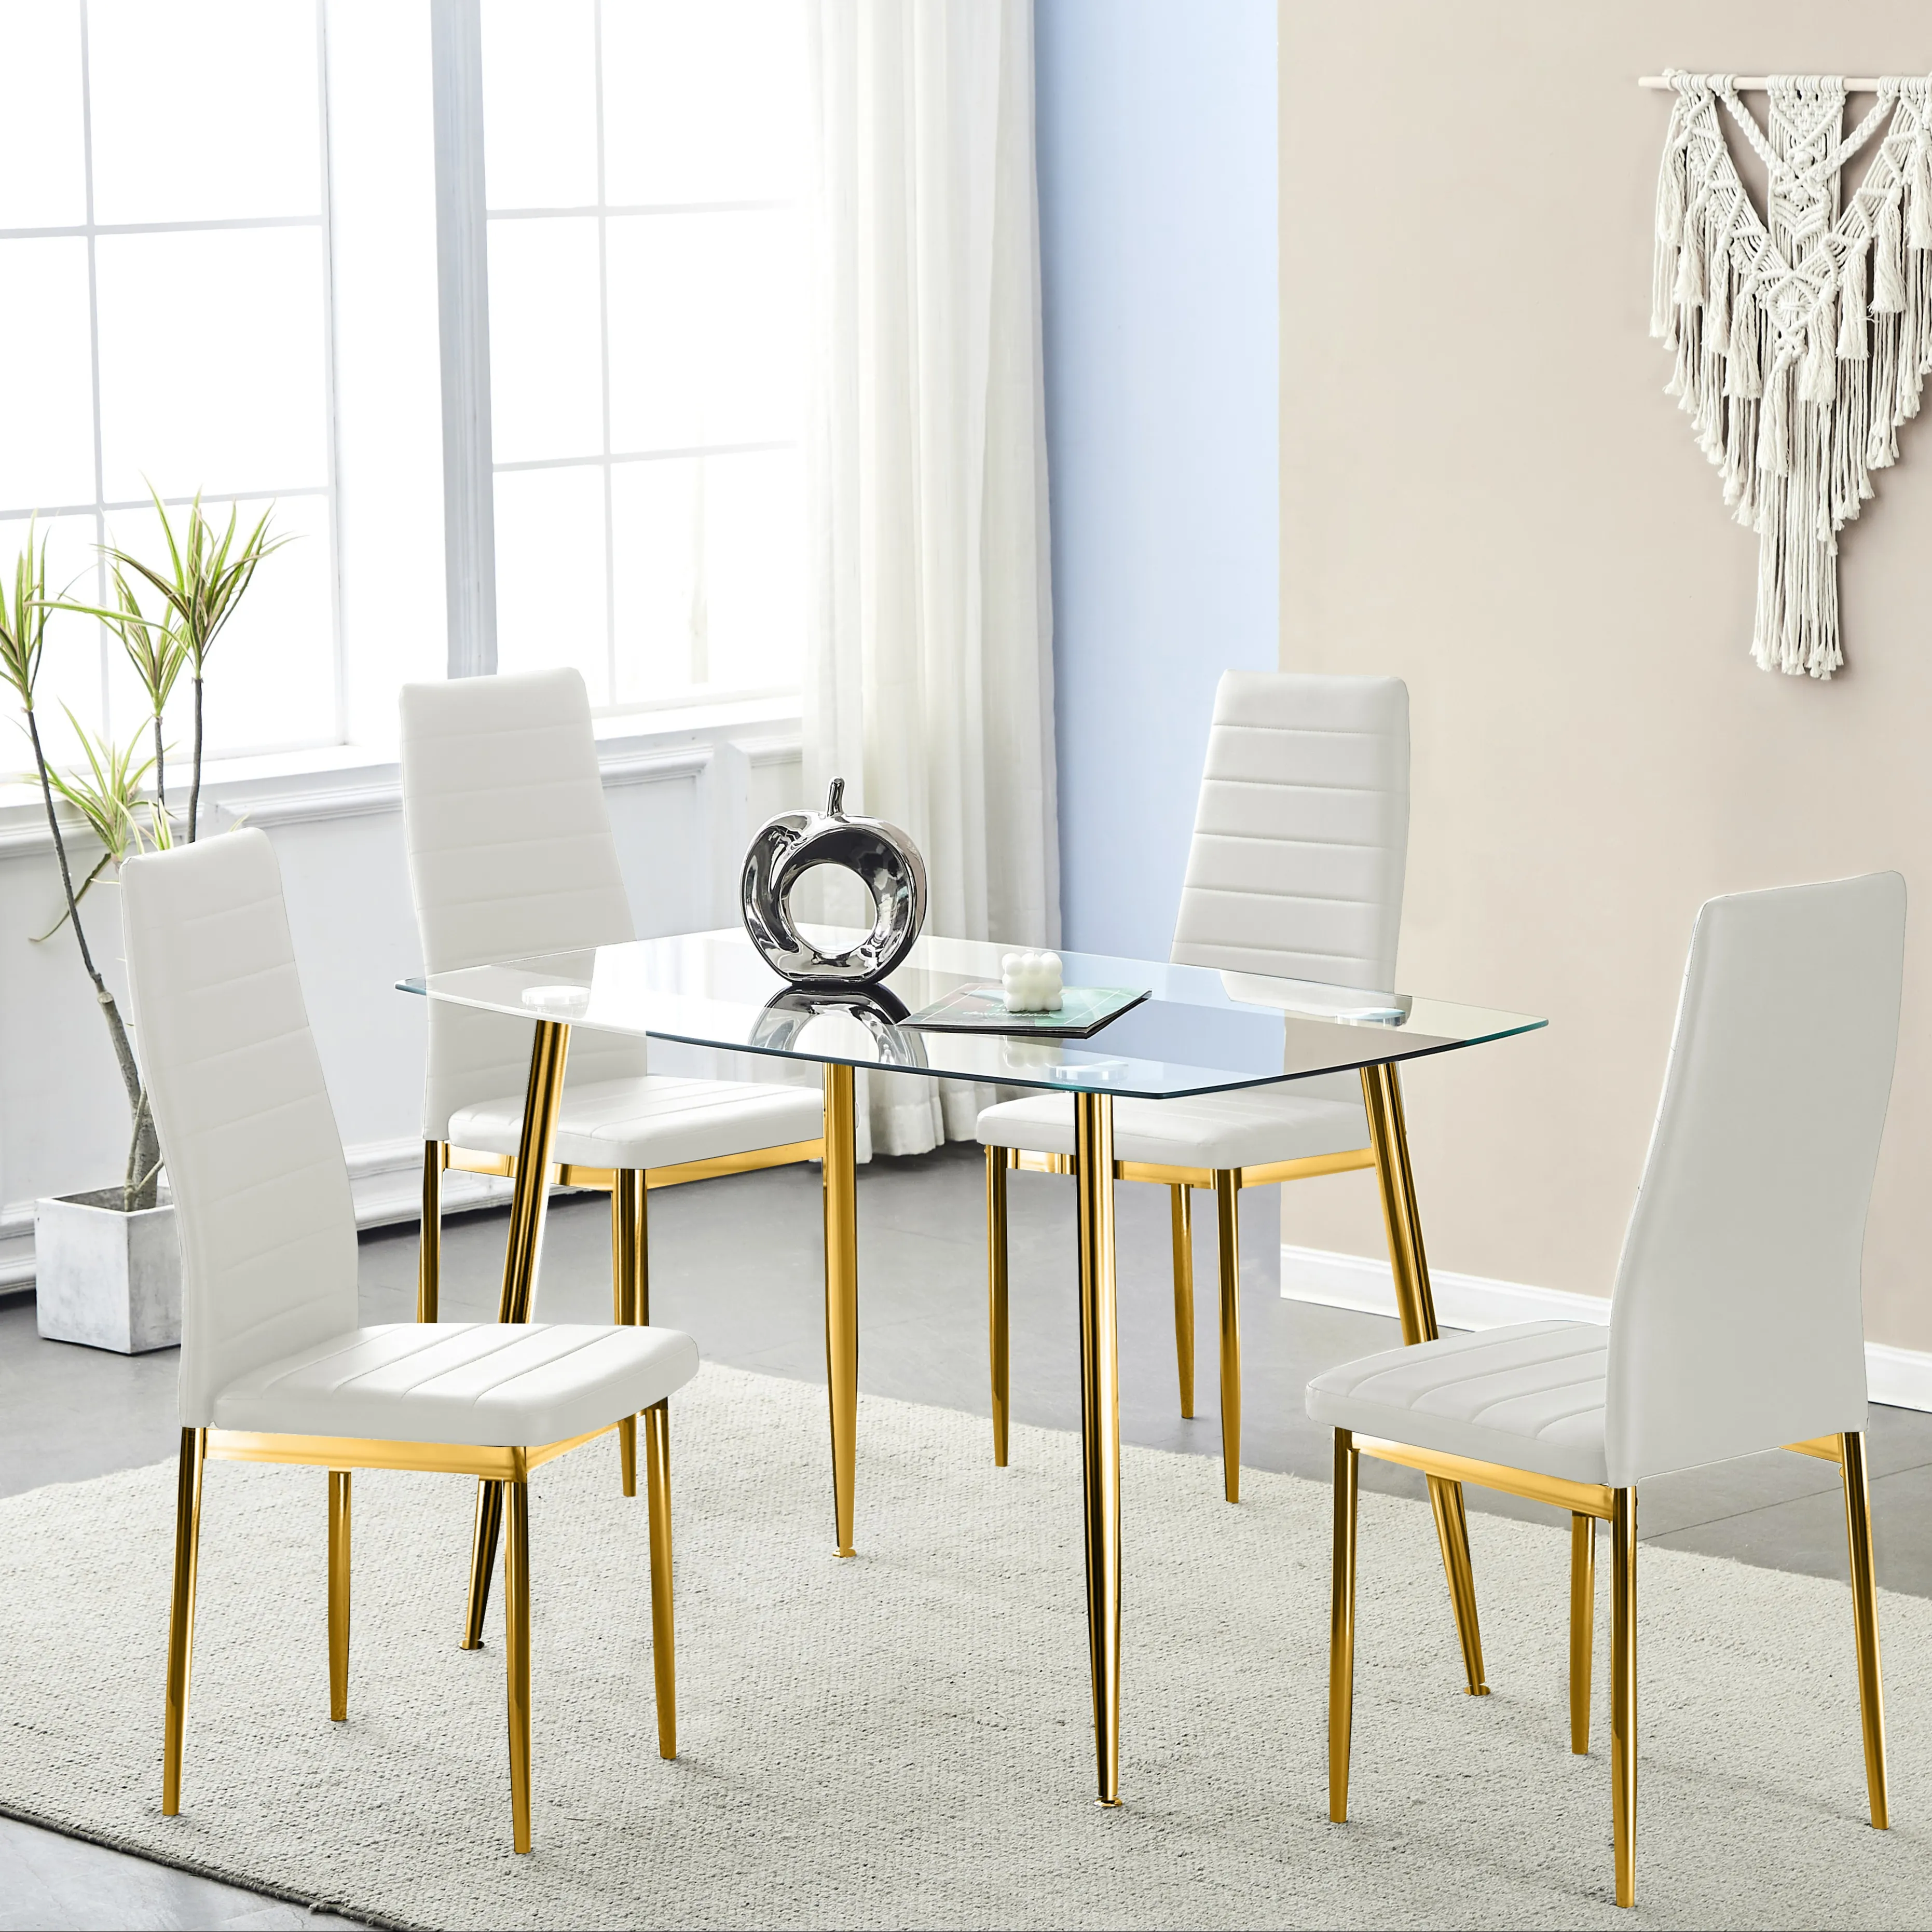 Toptan Custom Made ucuz Modern lüks tasarım cam üst yemek odası mobilyası dayanıklı yemek masası seti ve yemek sandalyesi